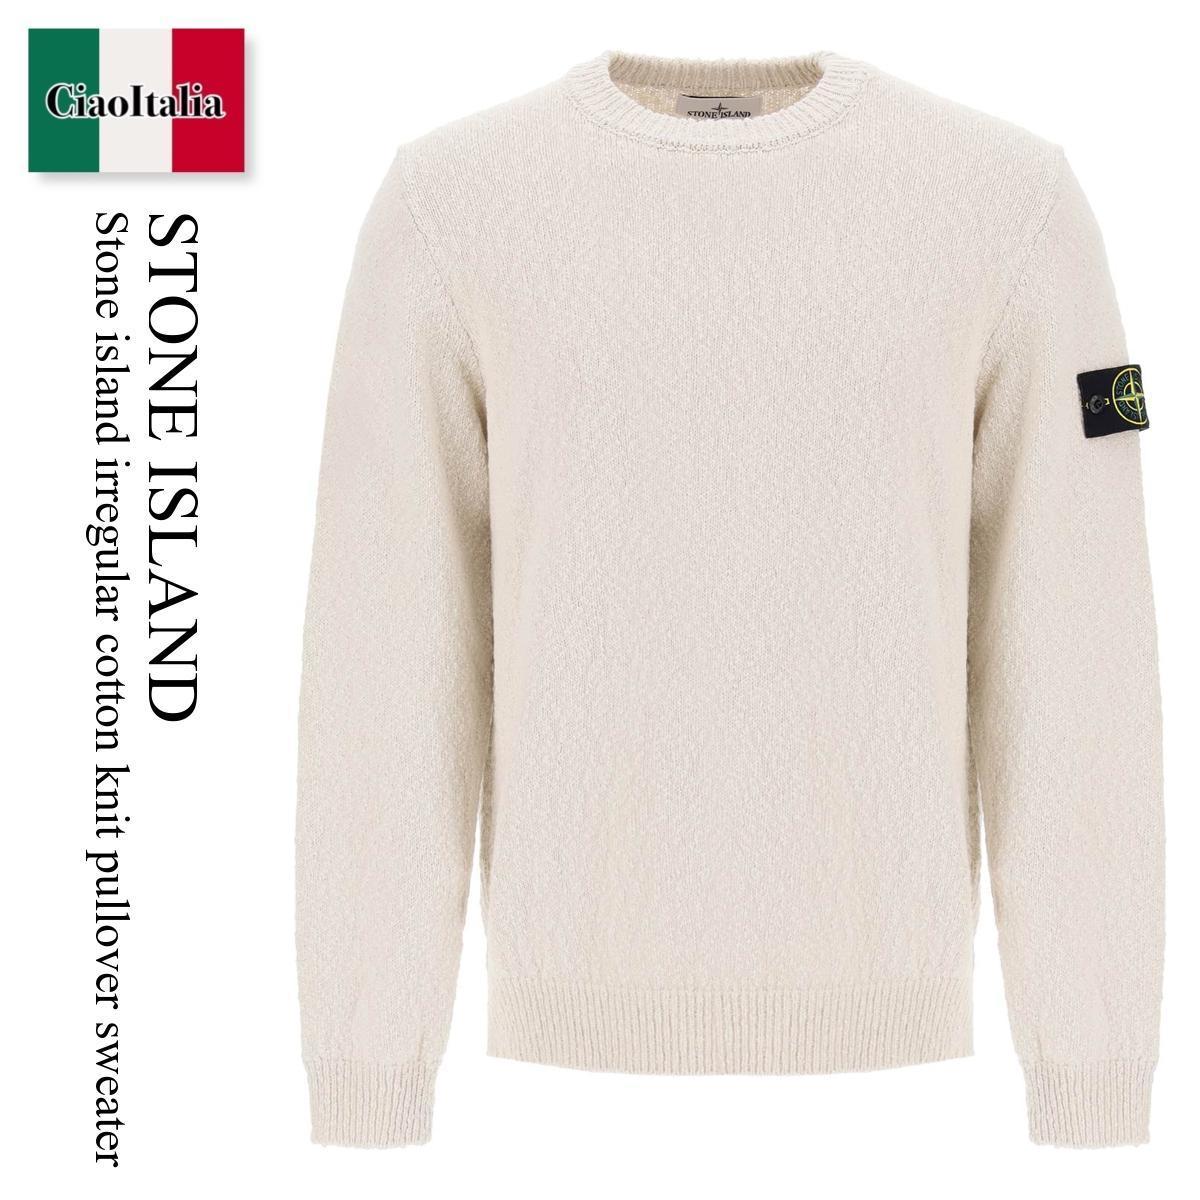 ストーンアイランド / Stone Island Irregular Cotton Knit Pullover Sweater / 8015562B1 / 8015562B1 V0091 / 8015562B1V0091 / ニット・セーター / 「正規品補償」「VIP価格販売」「お買い物サポート」